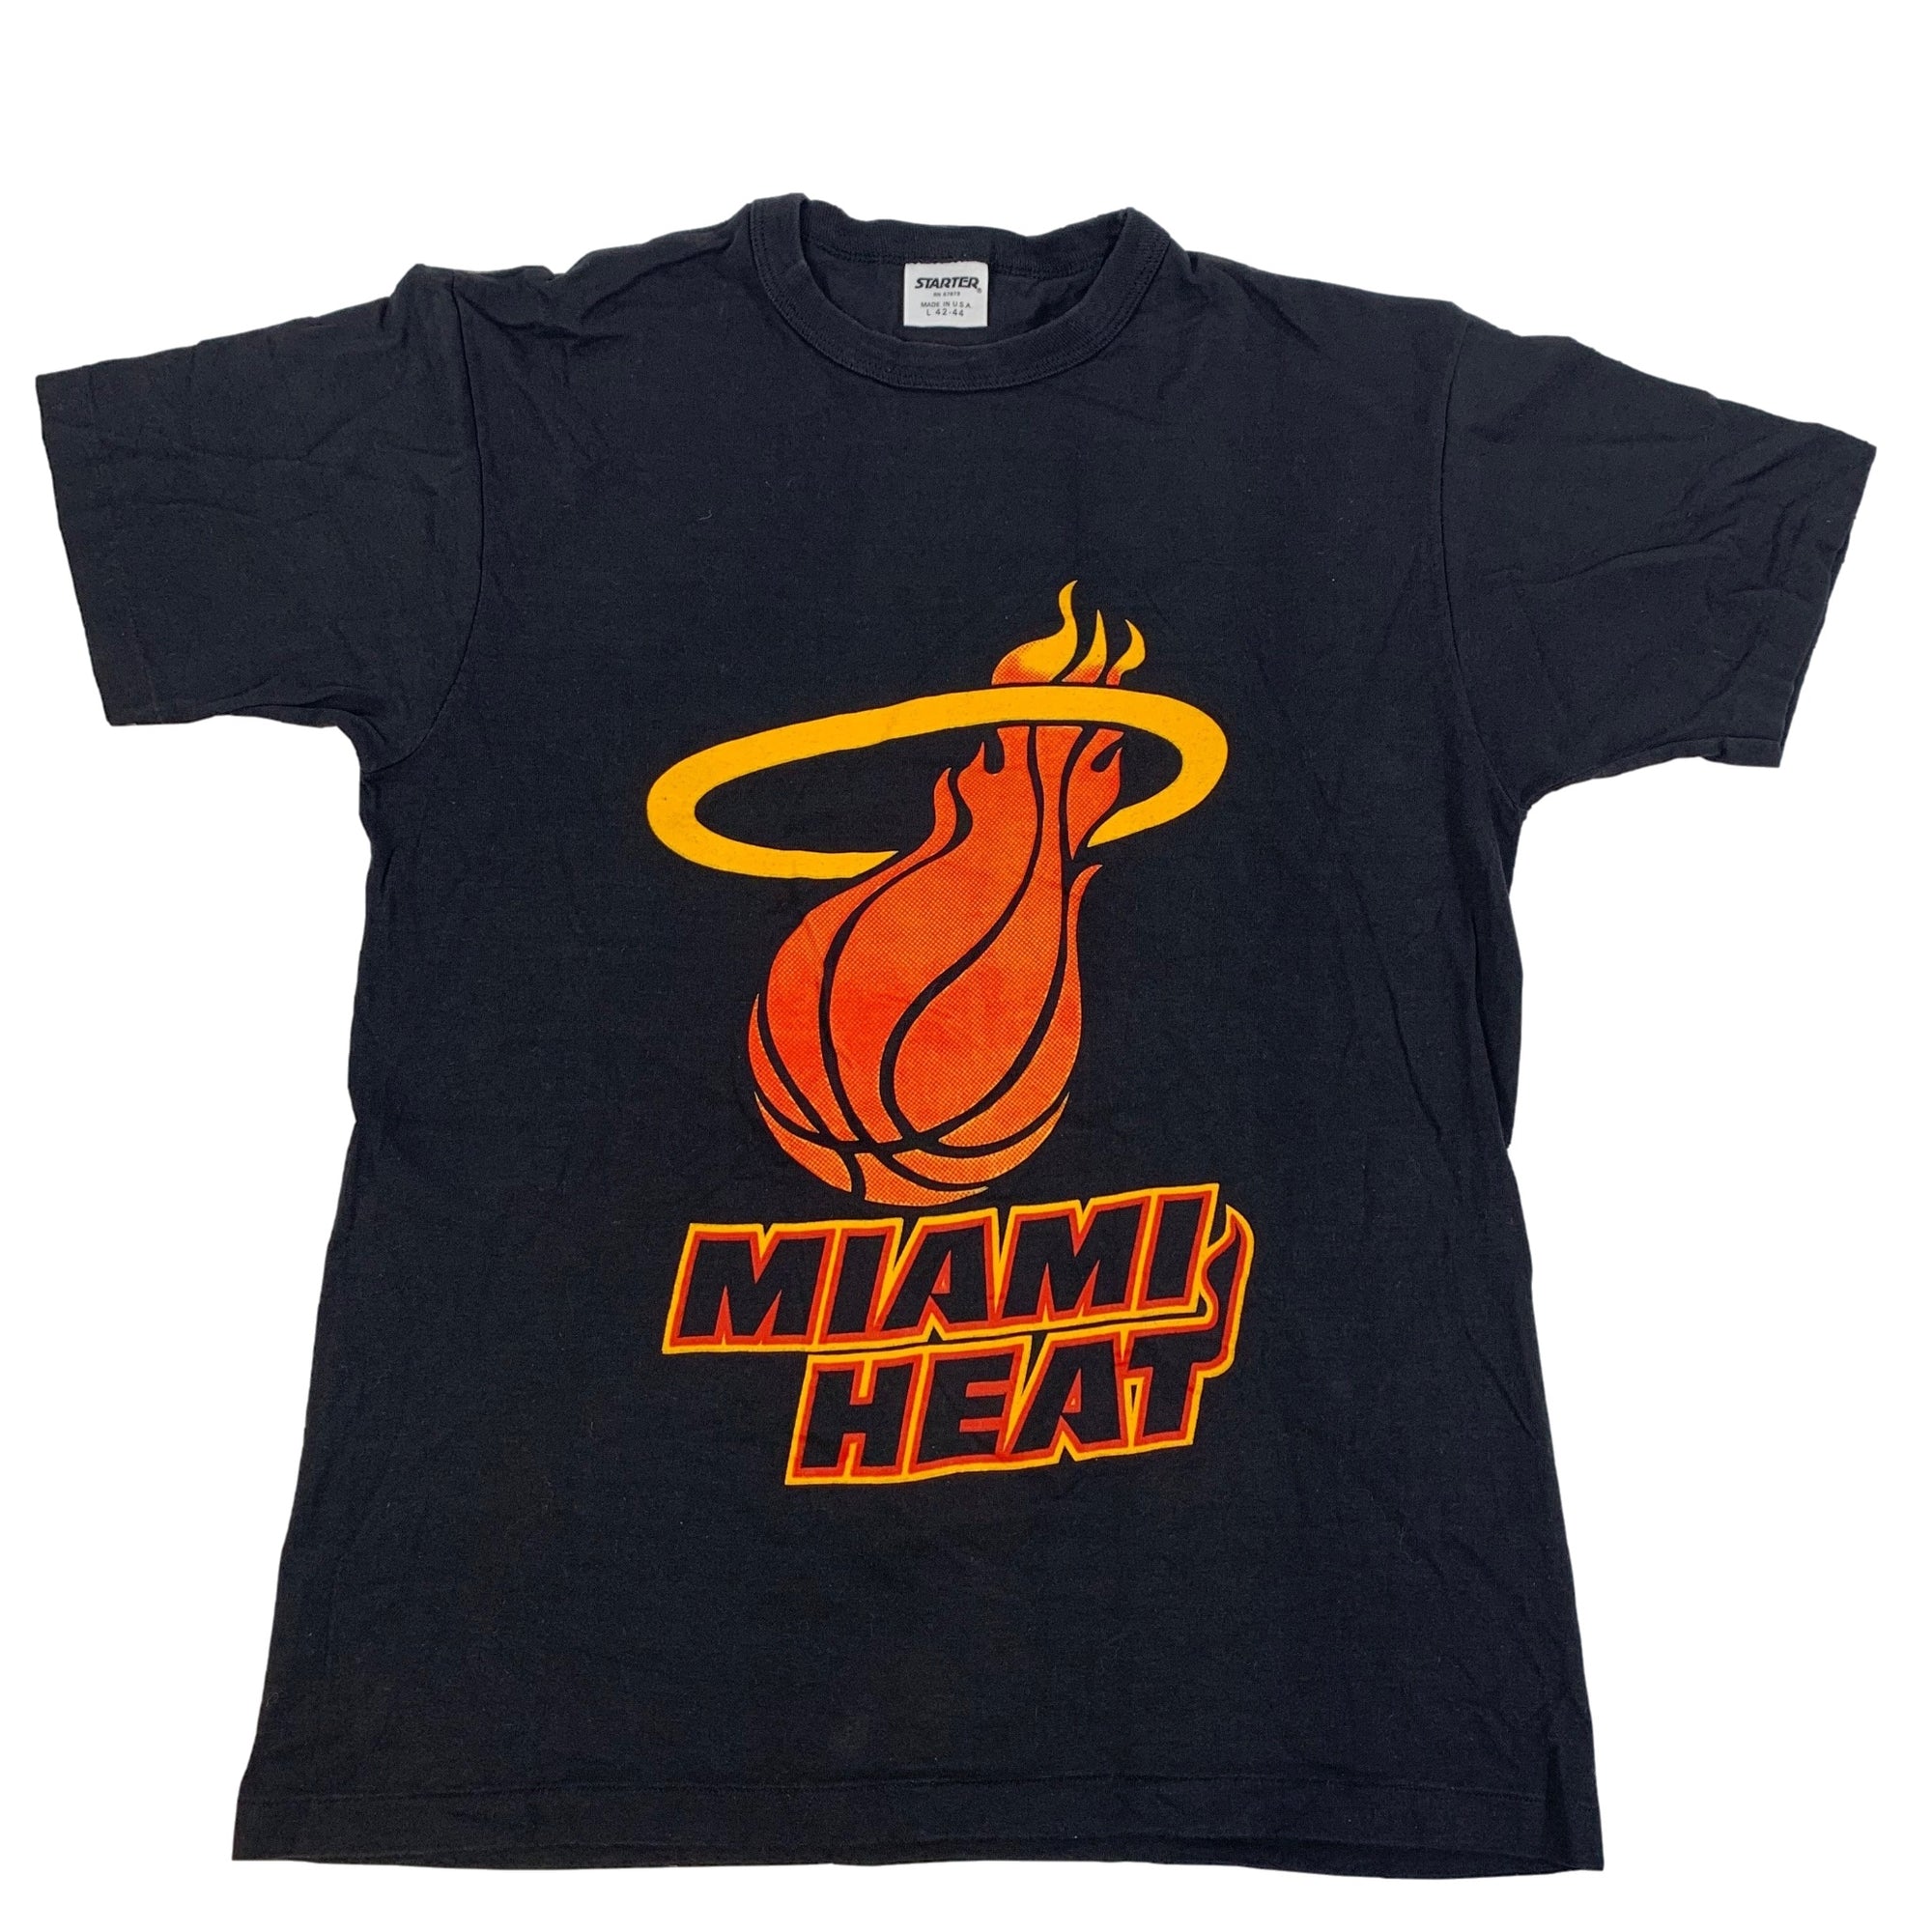 Vintage Miami Heat "Starter" T-Shirt - jointcustodydc